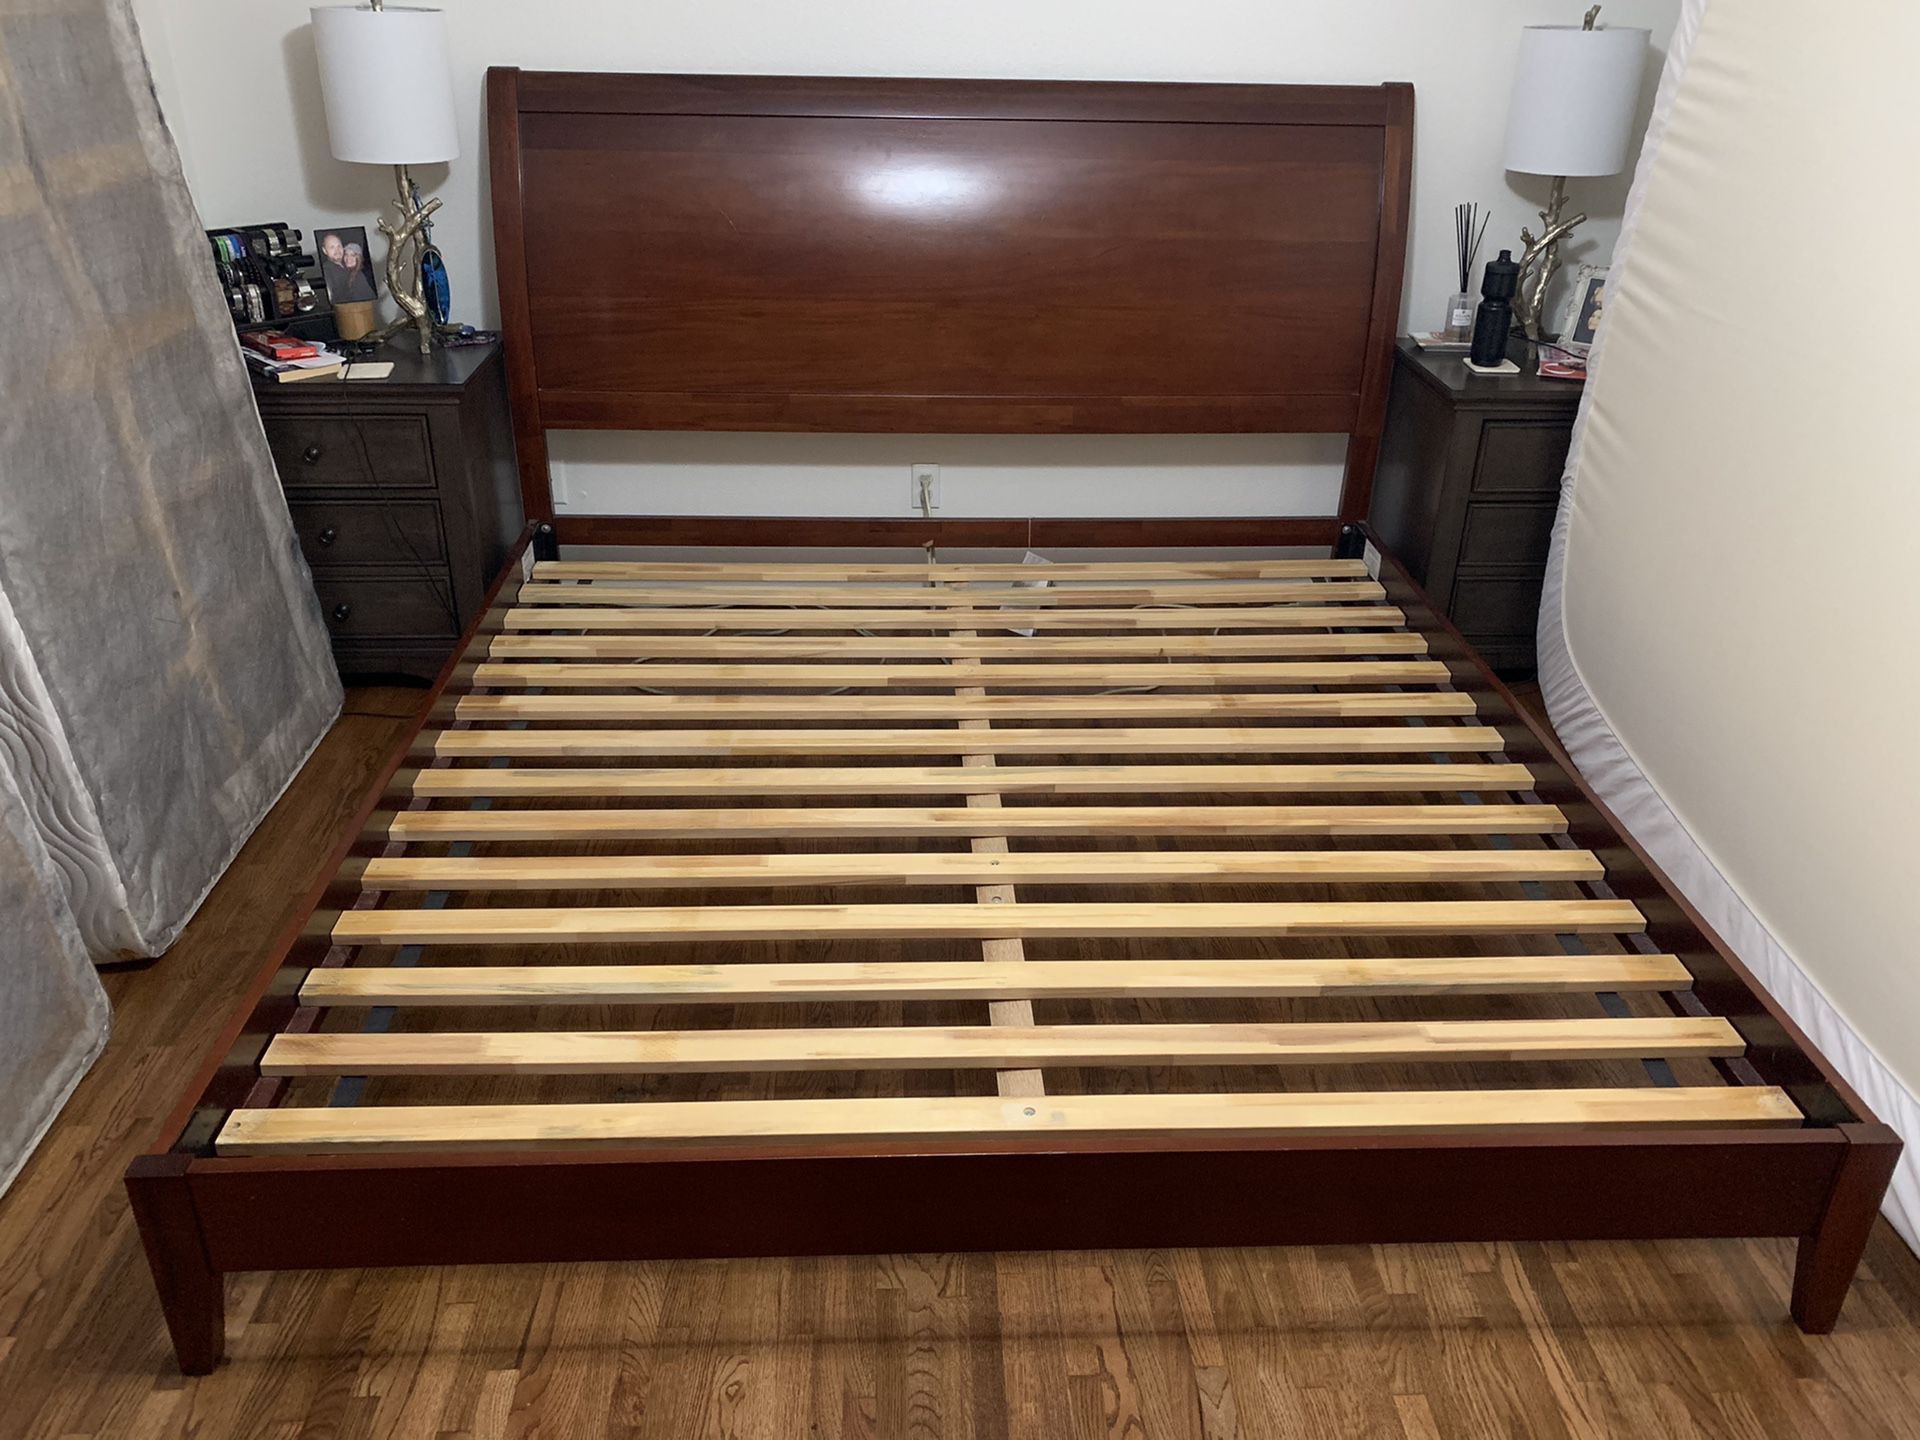 Wood platform king bed frame